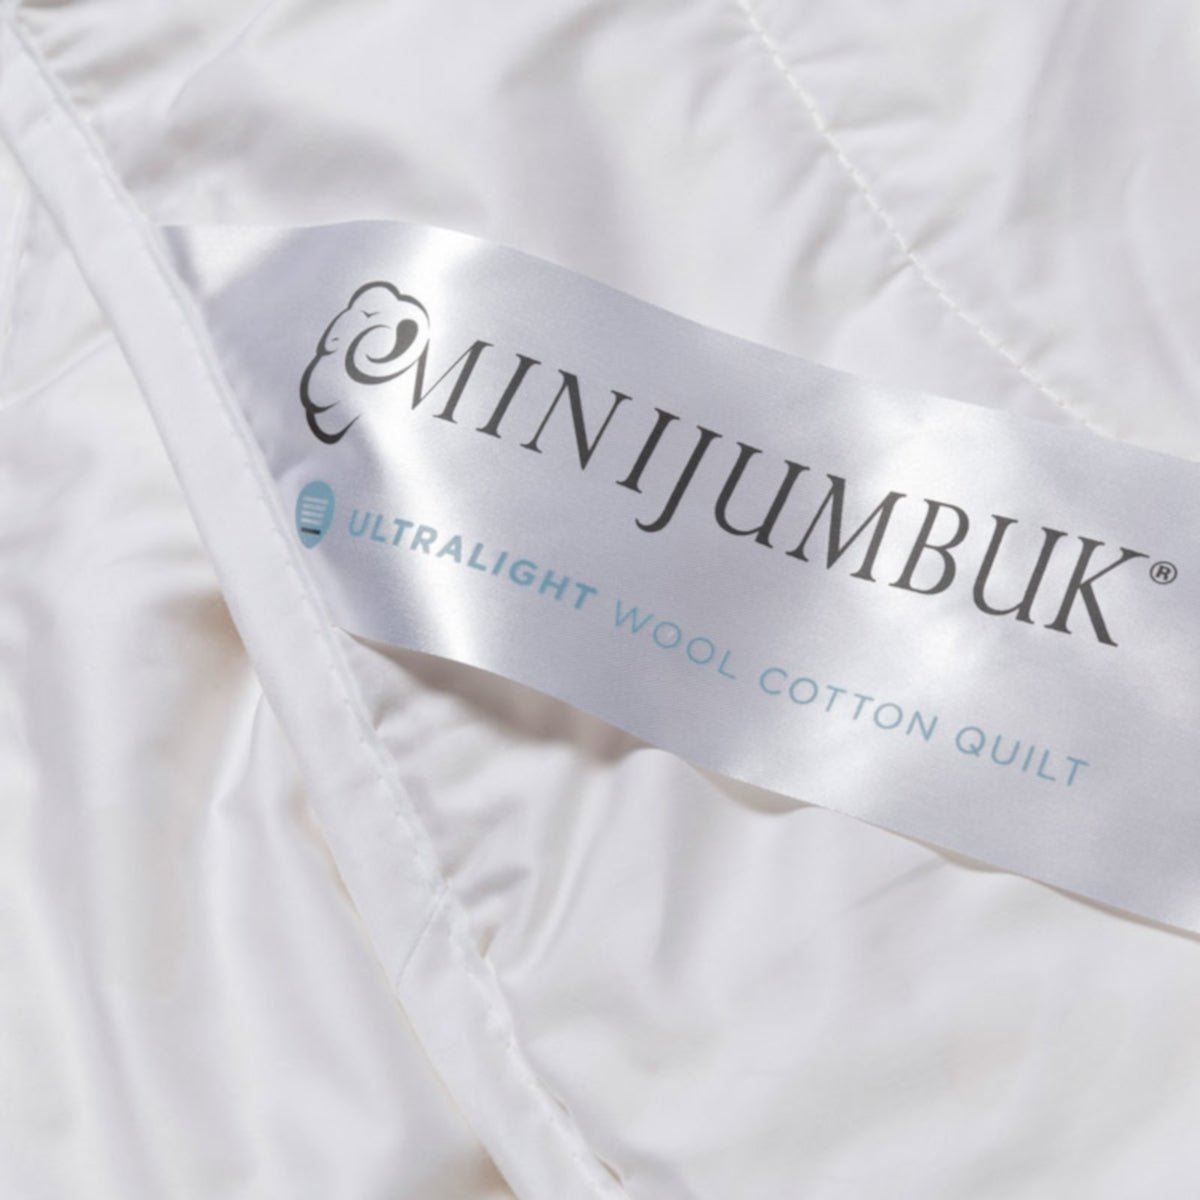 MiniJumbuk Ultralight Wool Cotton Quilt - Mattress & Pillow ScienceQuilts & Doonas